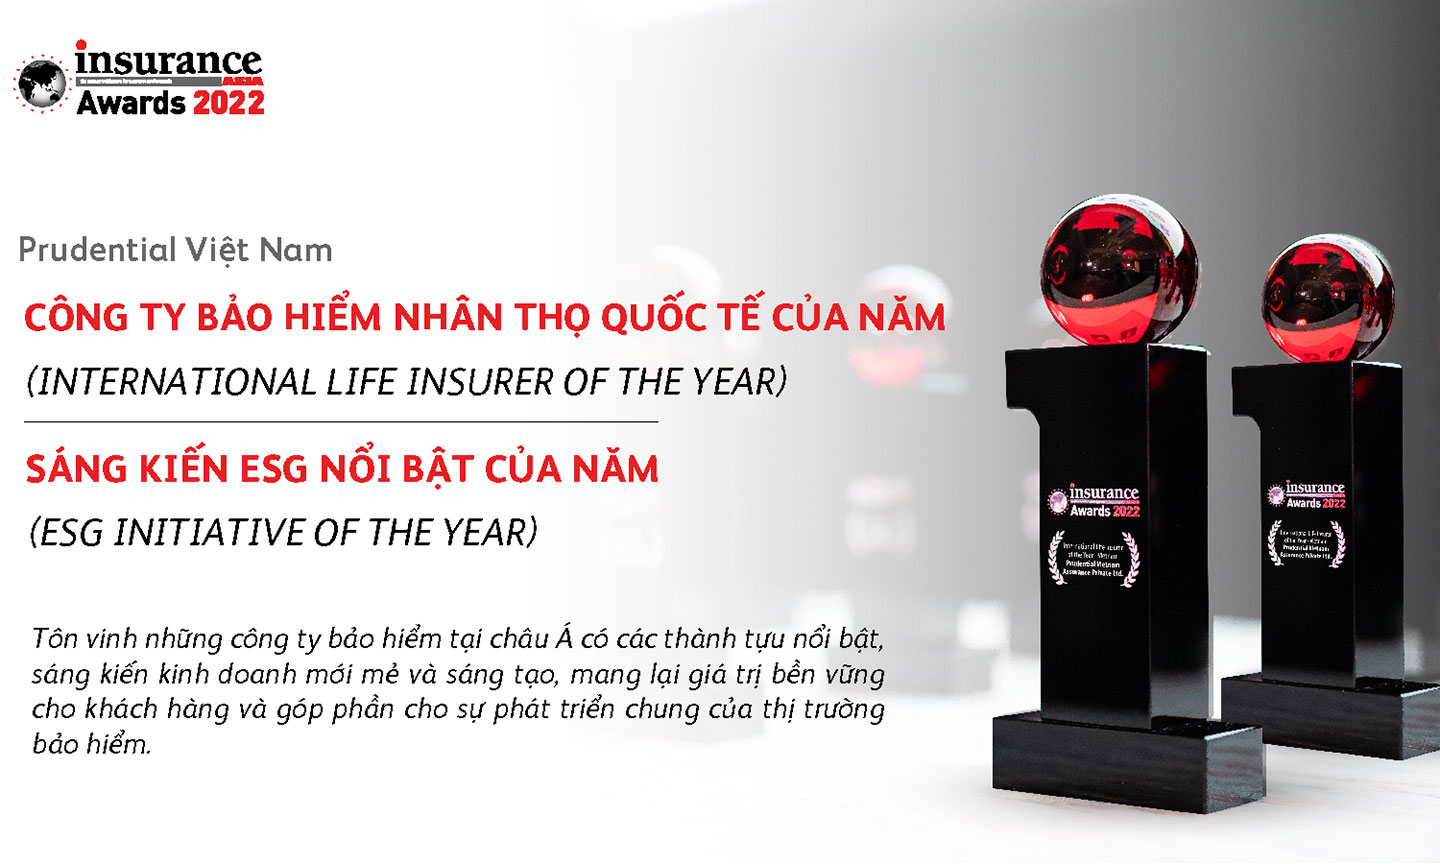 Prudential Việt Nam giành giải thưởng kép tại Insurance Asia Awards 2022.